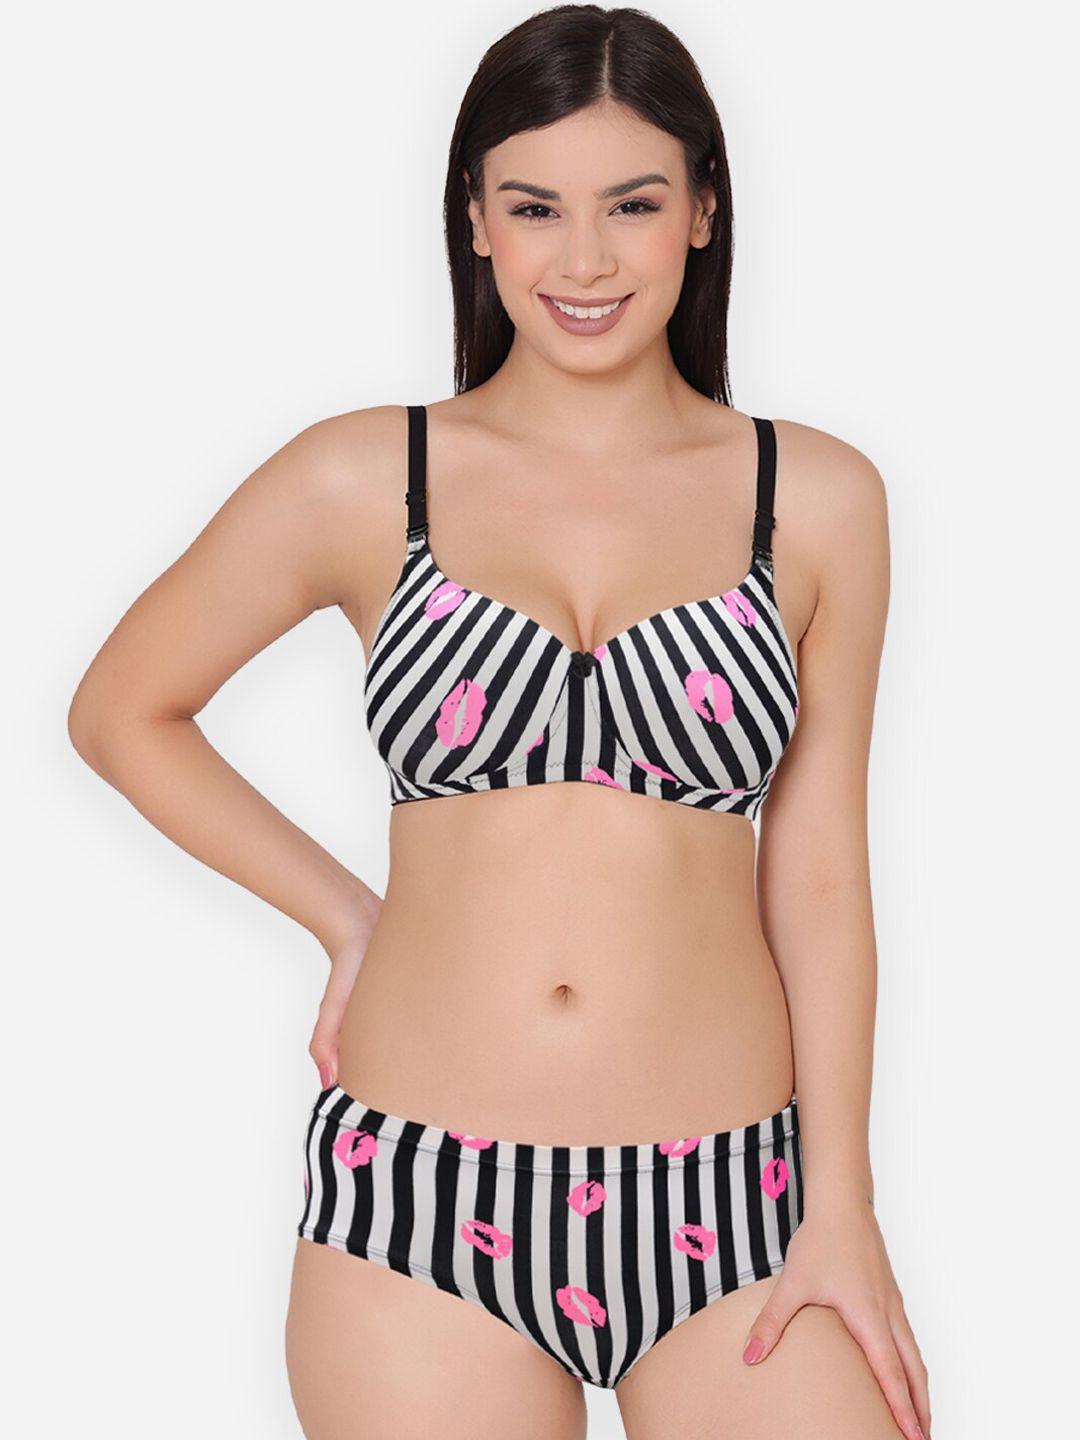 groversons paris beauty striped lingerie set bp0157-black white-32b